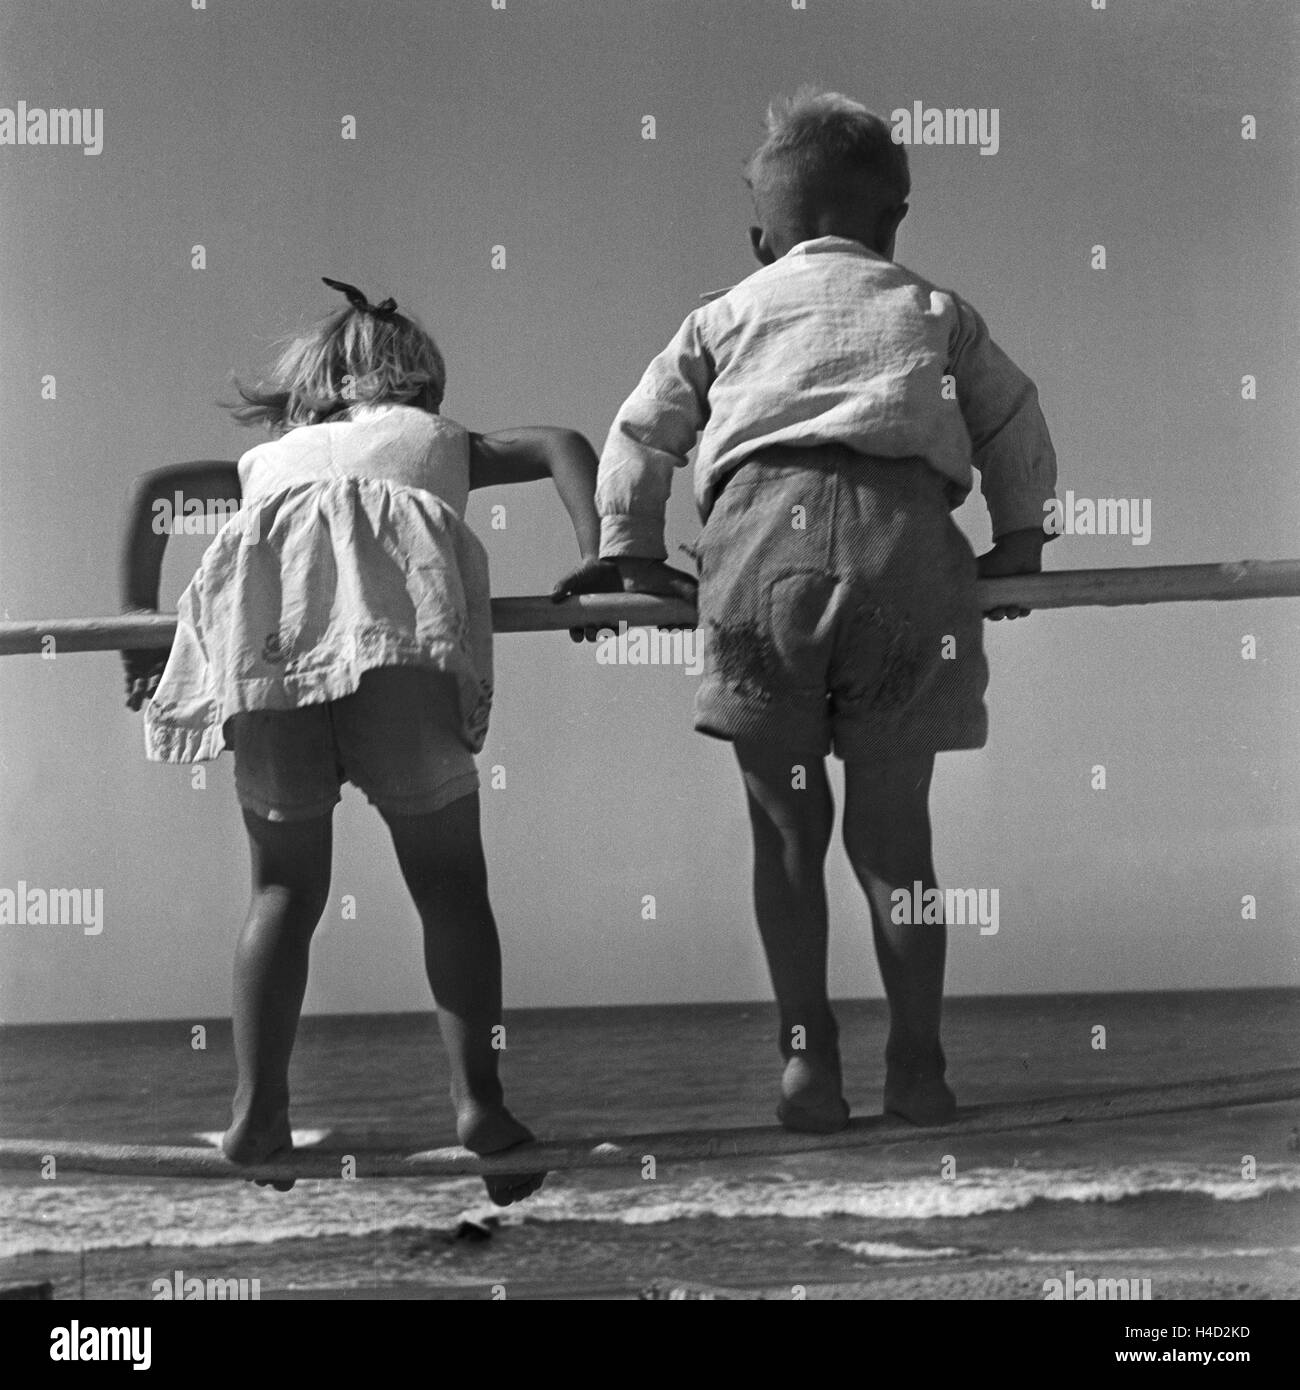 Zwei kleine Kinder turnen une einem Gelände am Strand der Ostsee dans Ostpreußen, Deutschland 1930er Jahre. Deux petits enfants jouant à une balustrade sur la côte de la mer Baltique à l'Est de la Prusse, l'Allemagne des années 1930. Banque D'Images